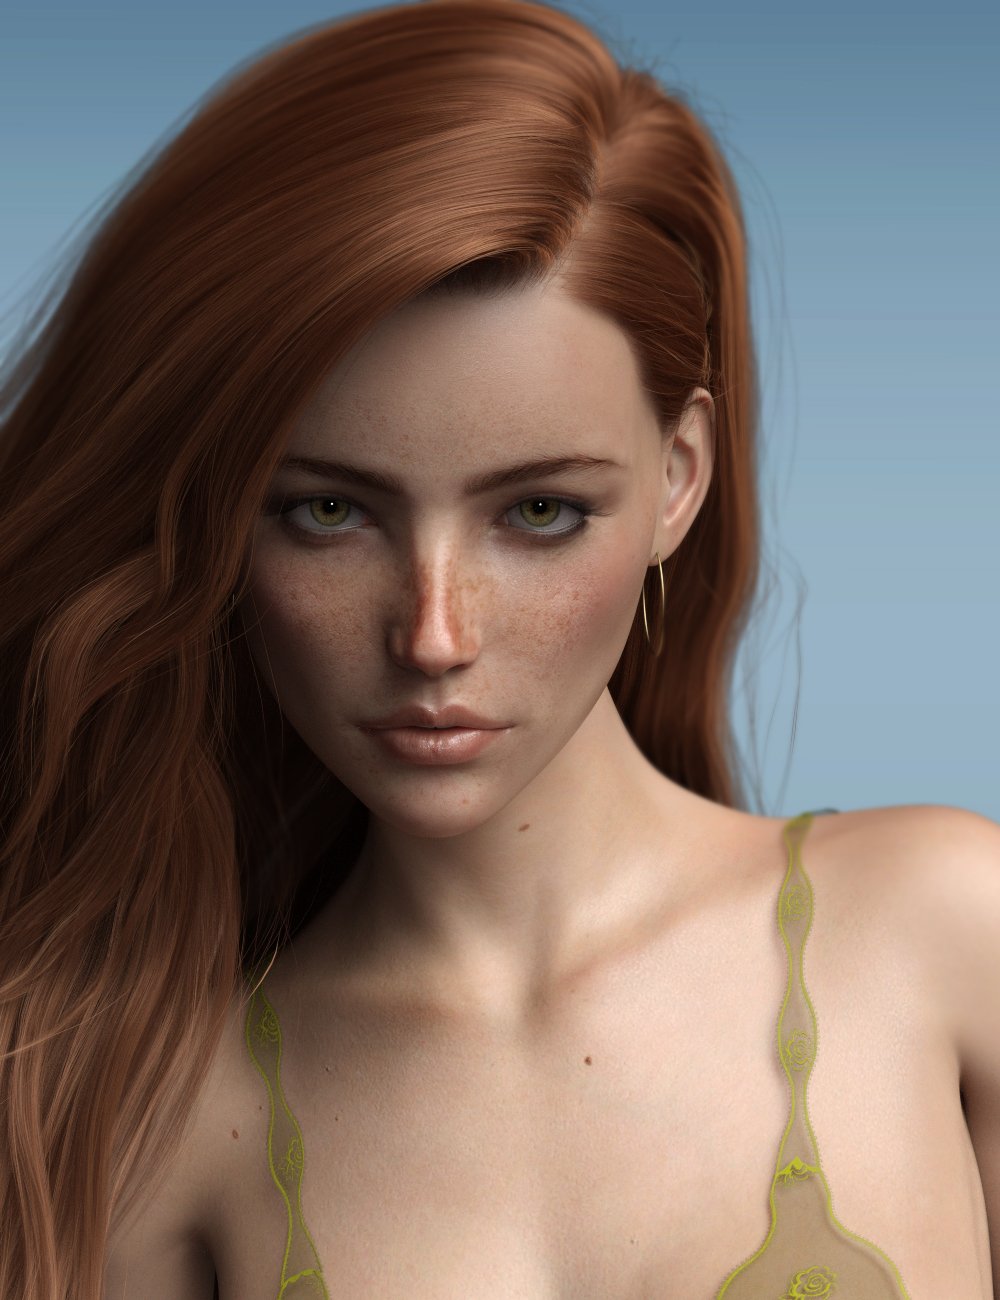 P3D Portia for Genesis 8 Female by: P3Design, 3D Models by Daz 3D